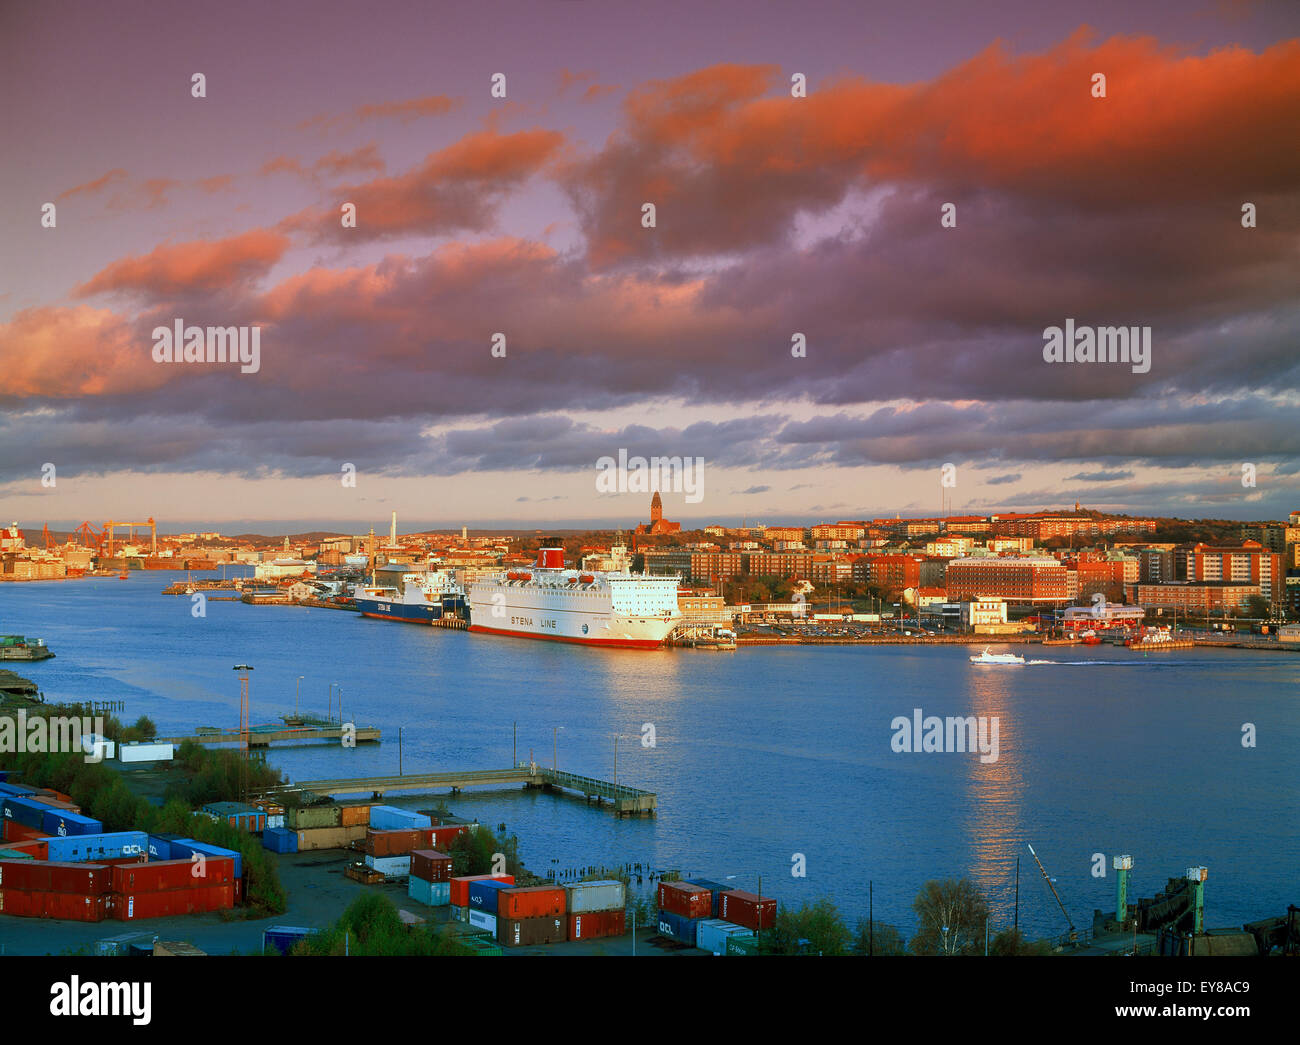 Los buques en los puertos o Gothhenburg en Goteborg, en la costa oeste de Suecia en la luz del atardecer Foto de stock